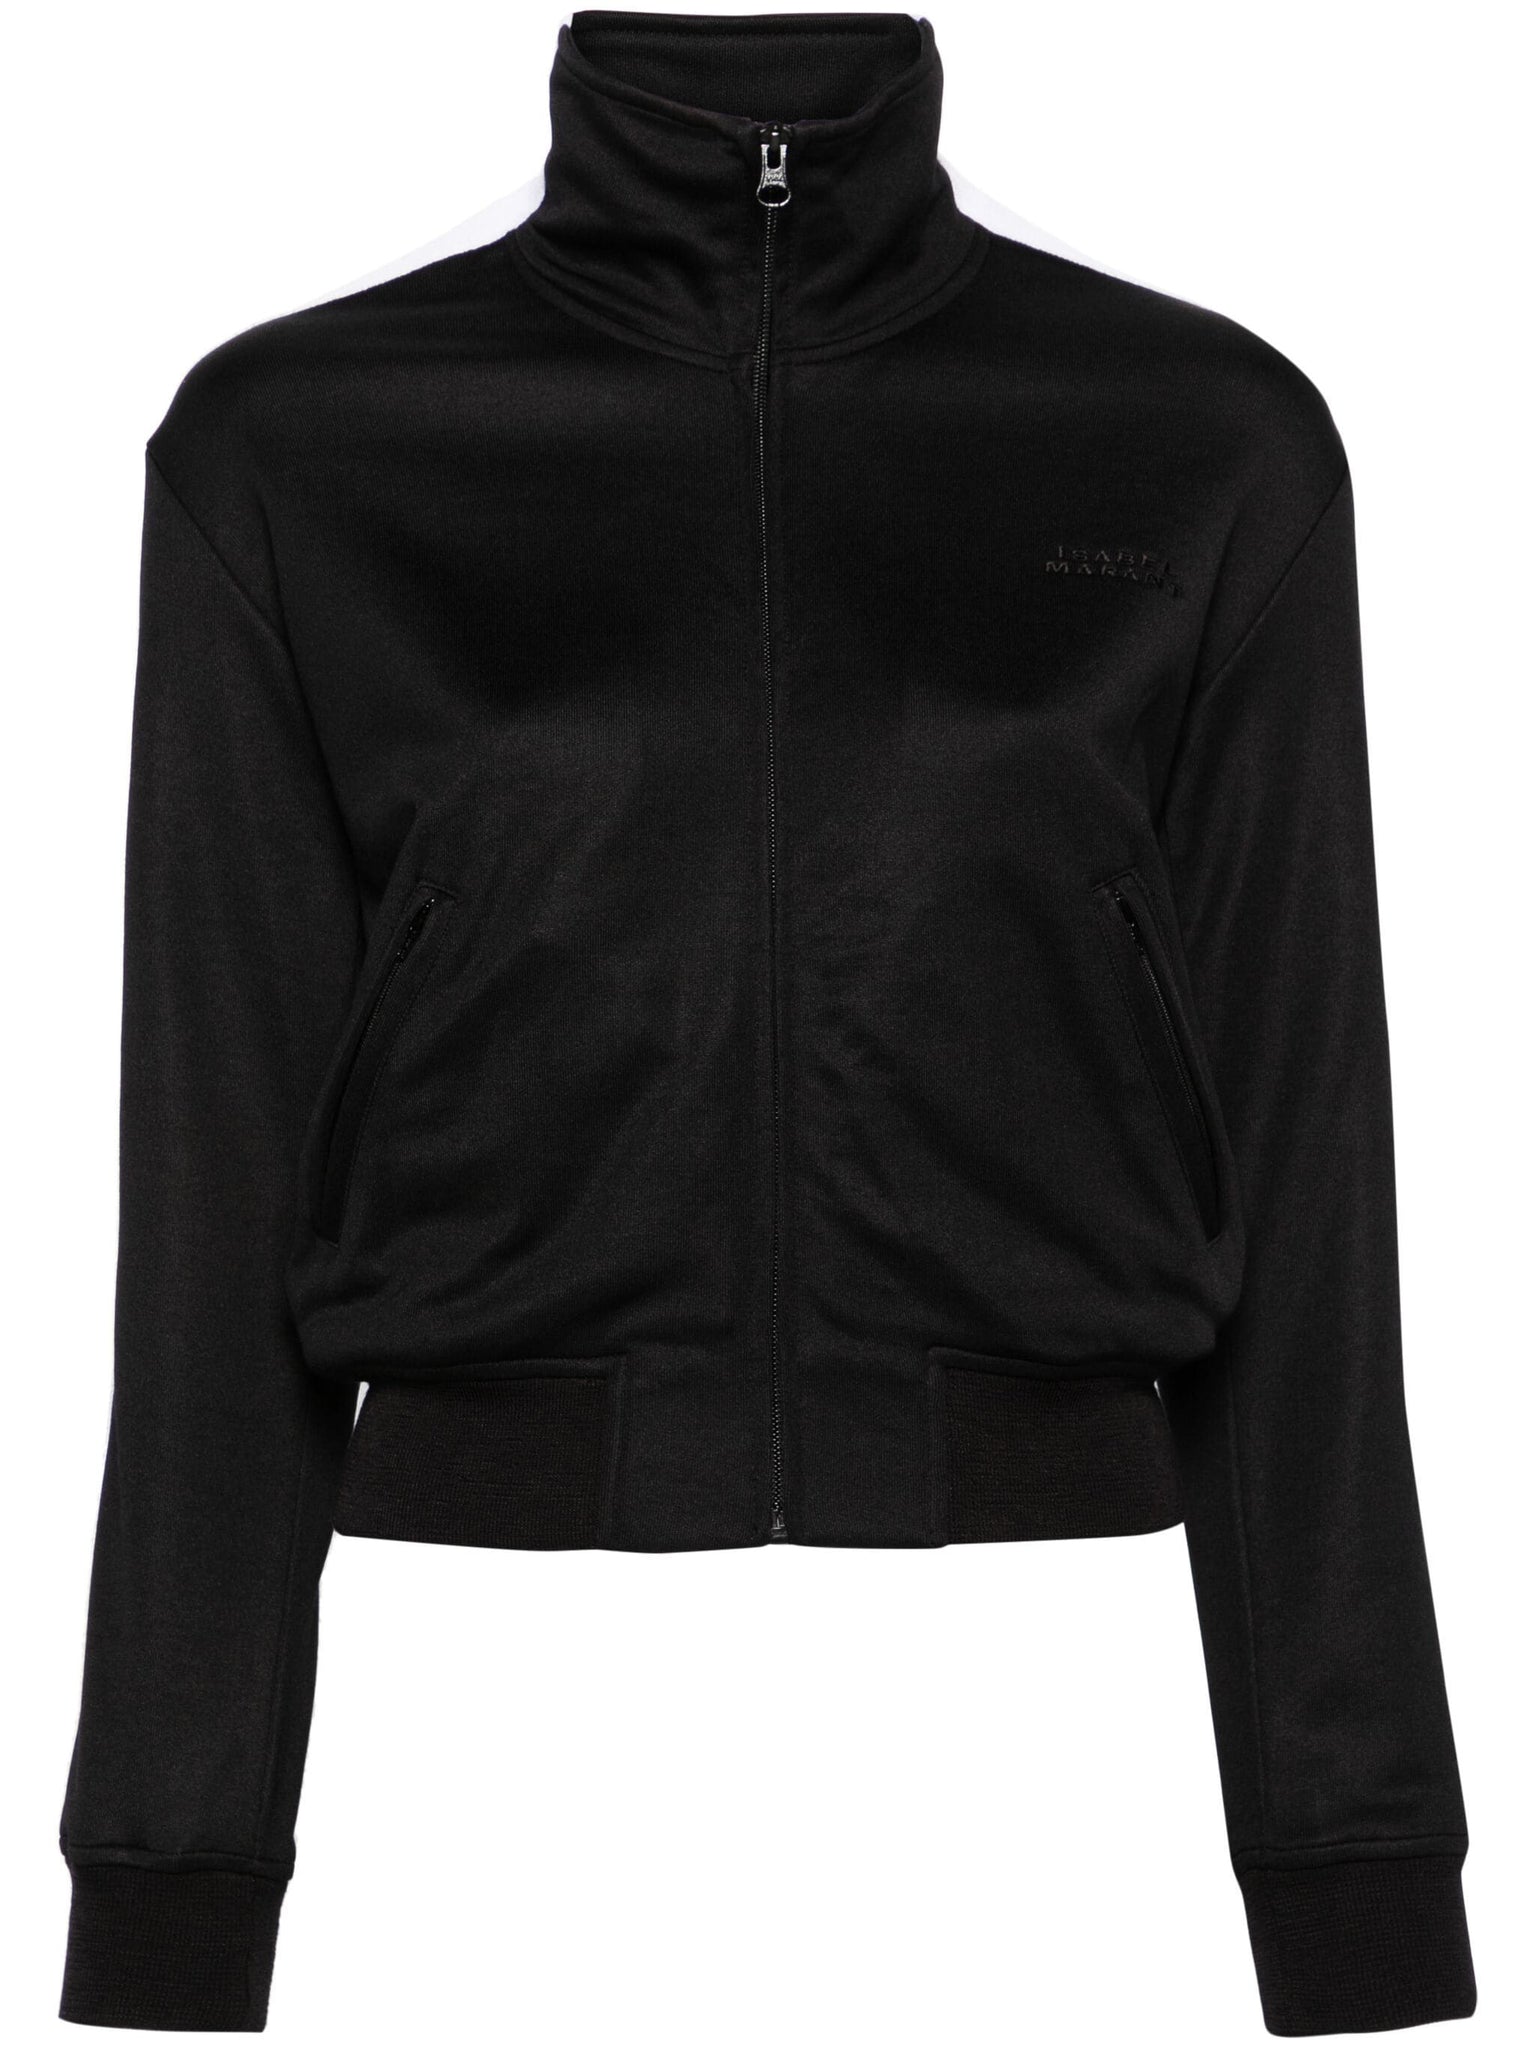 Ramis jacket, black